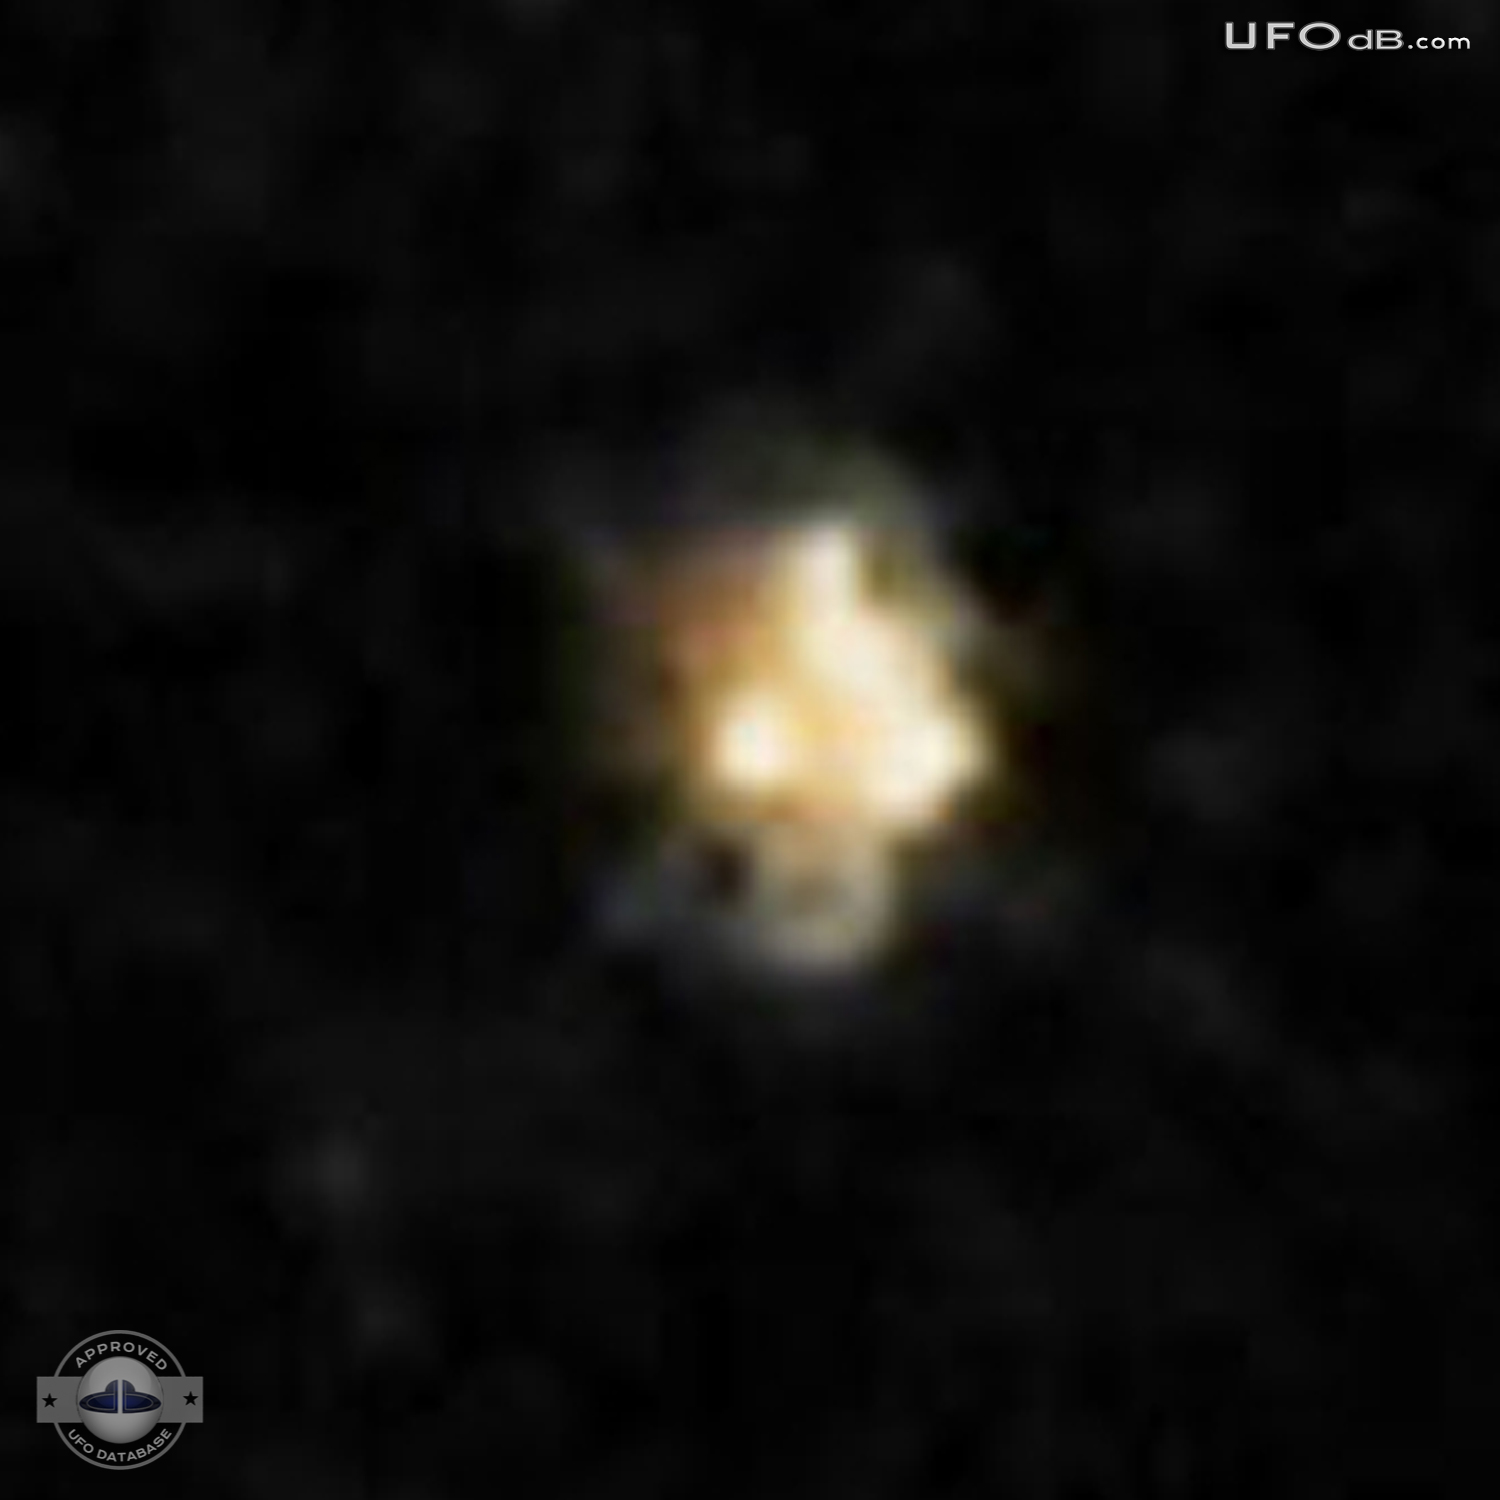 Odd Looking Star is a UFO | St. Joseph, Missouri, USA | April 12 2011 UFO Picture #300-3